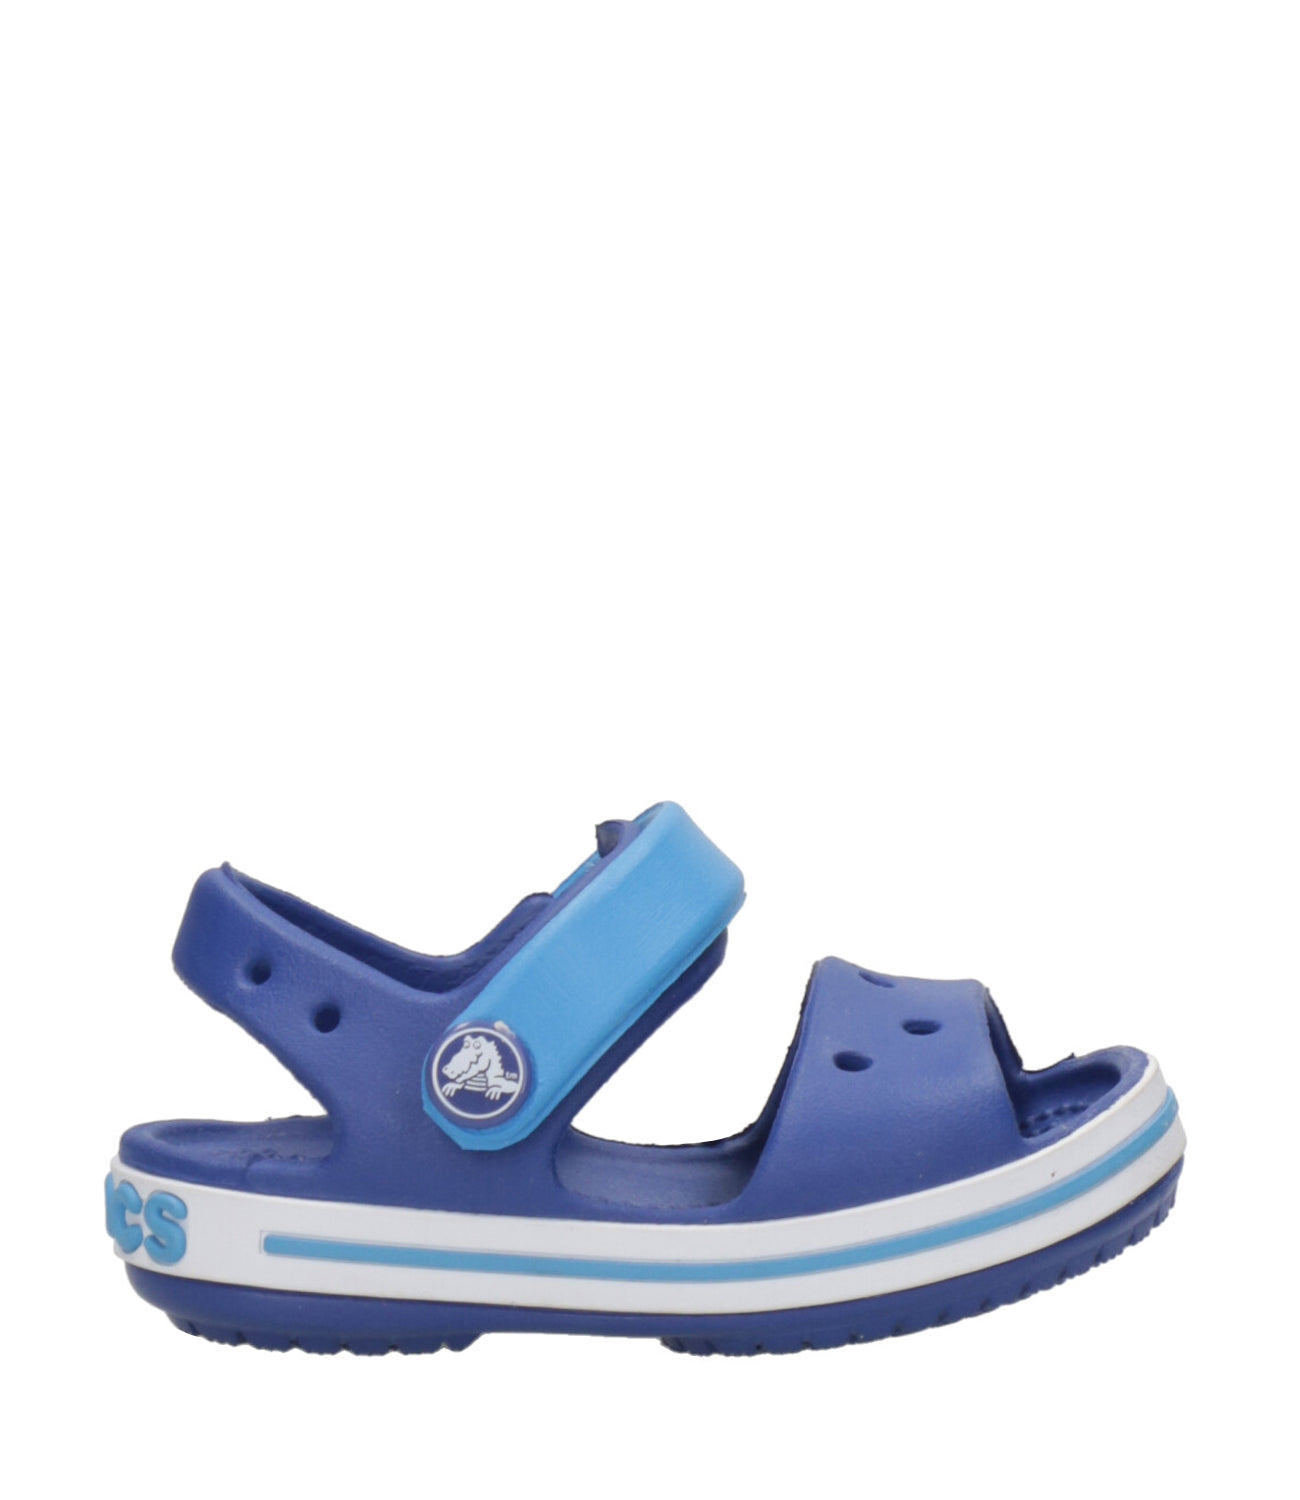 Crocs Kids | Sabot Crocband Sandal Blue and Light Blue